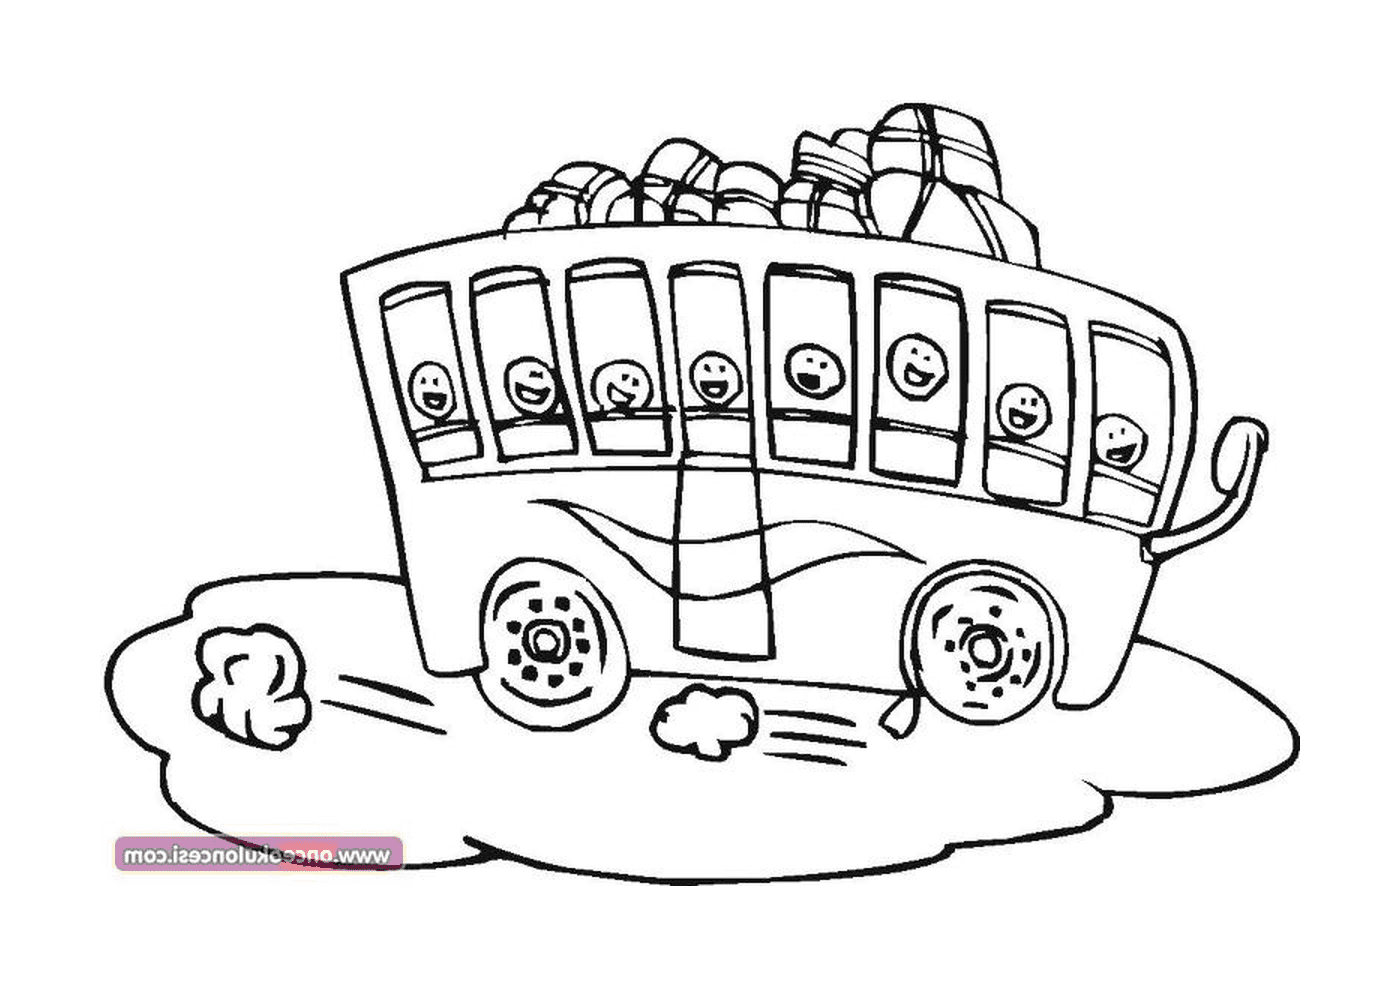  Автобус с множеством лиц, нарисованных на нем 